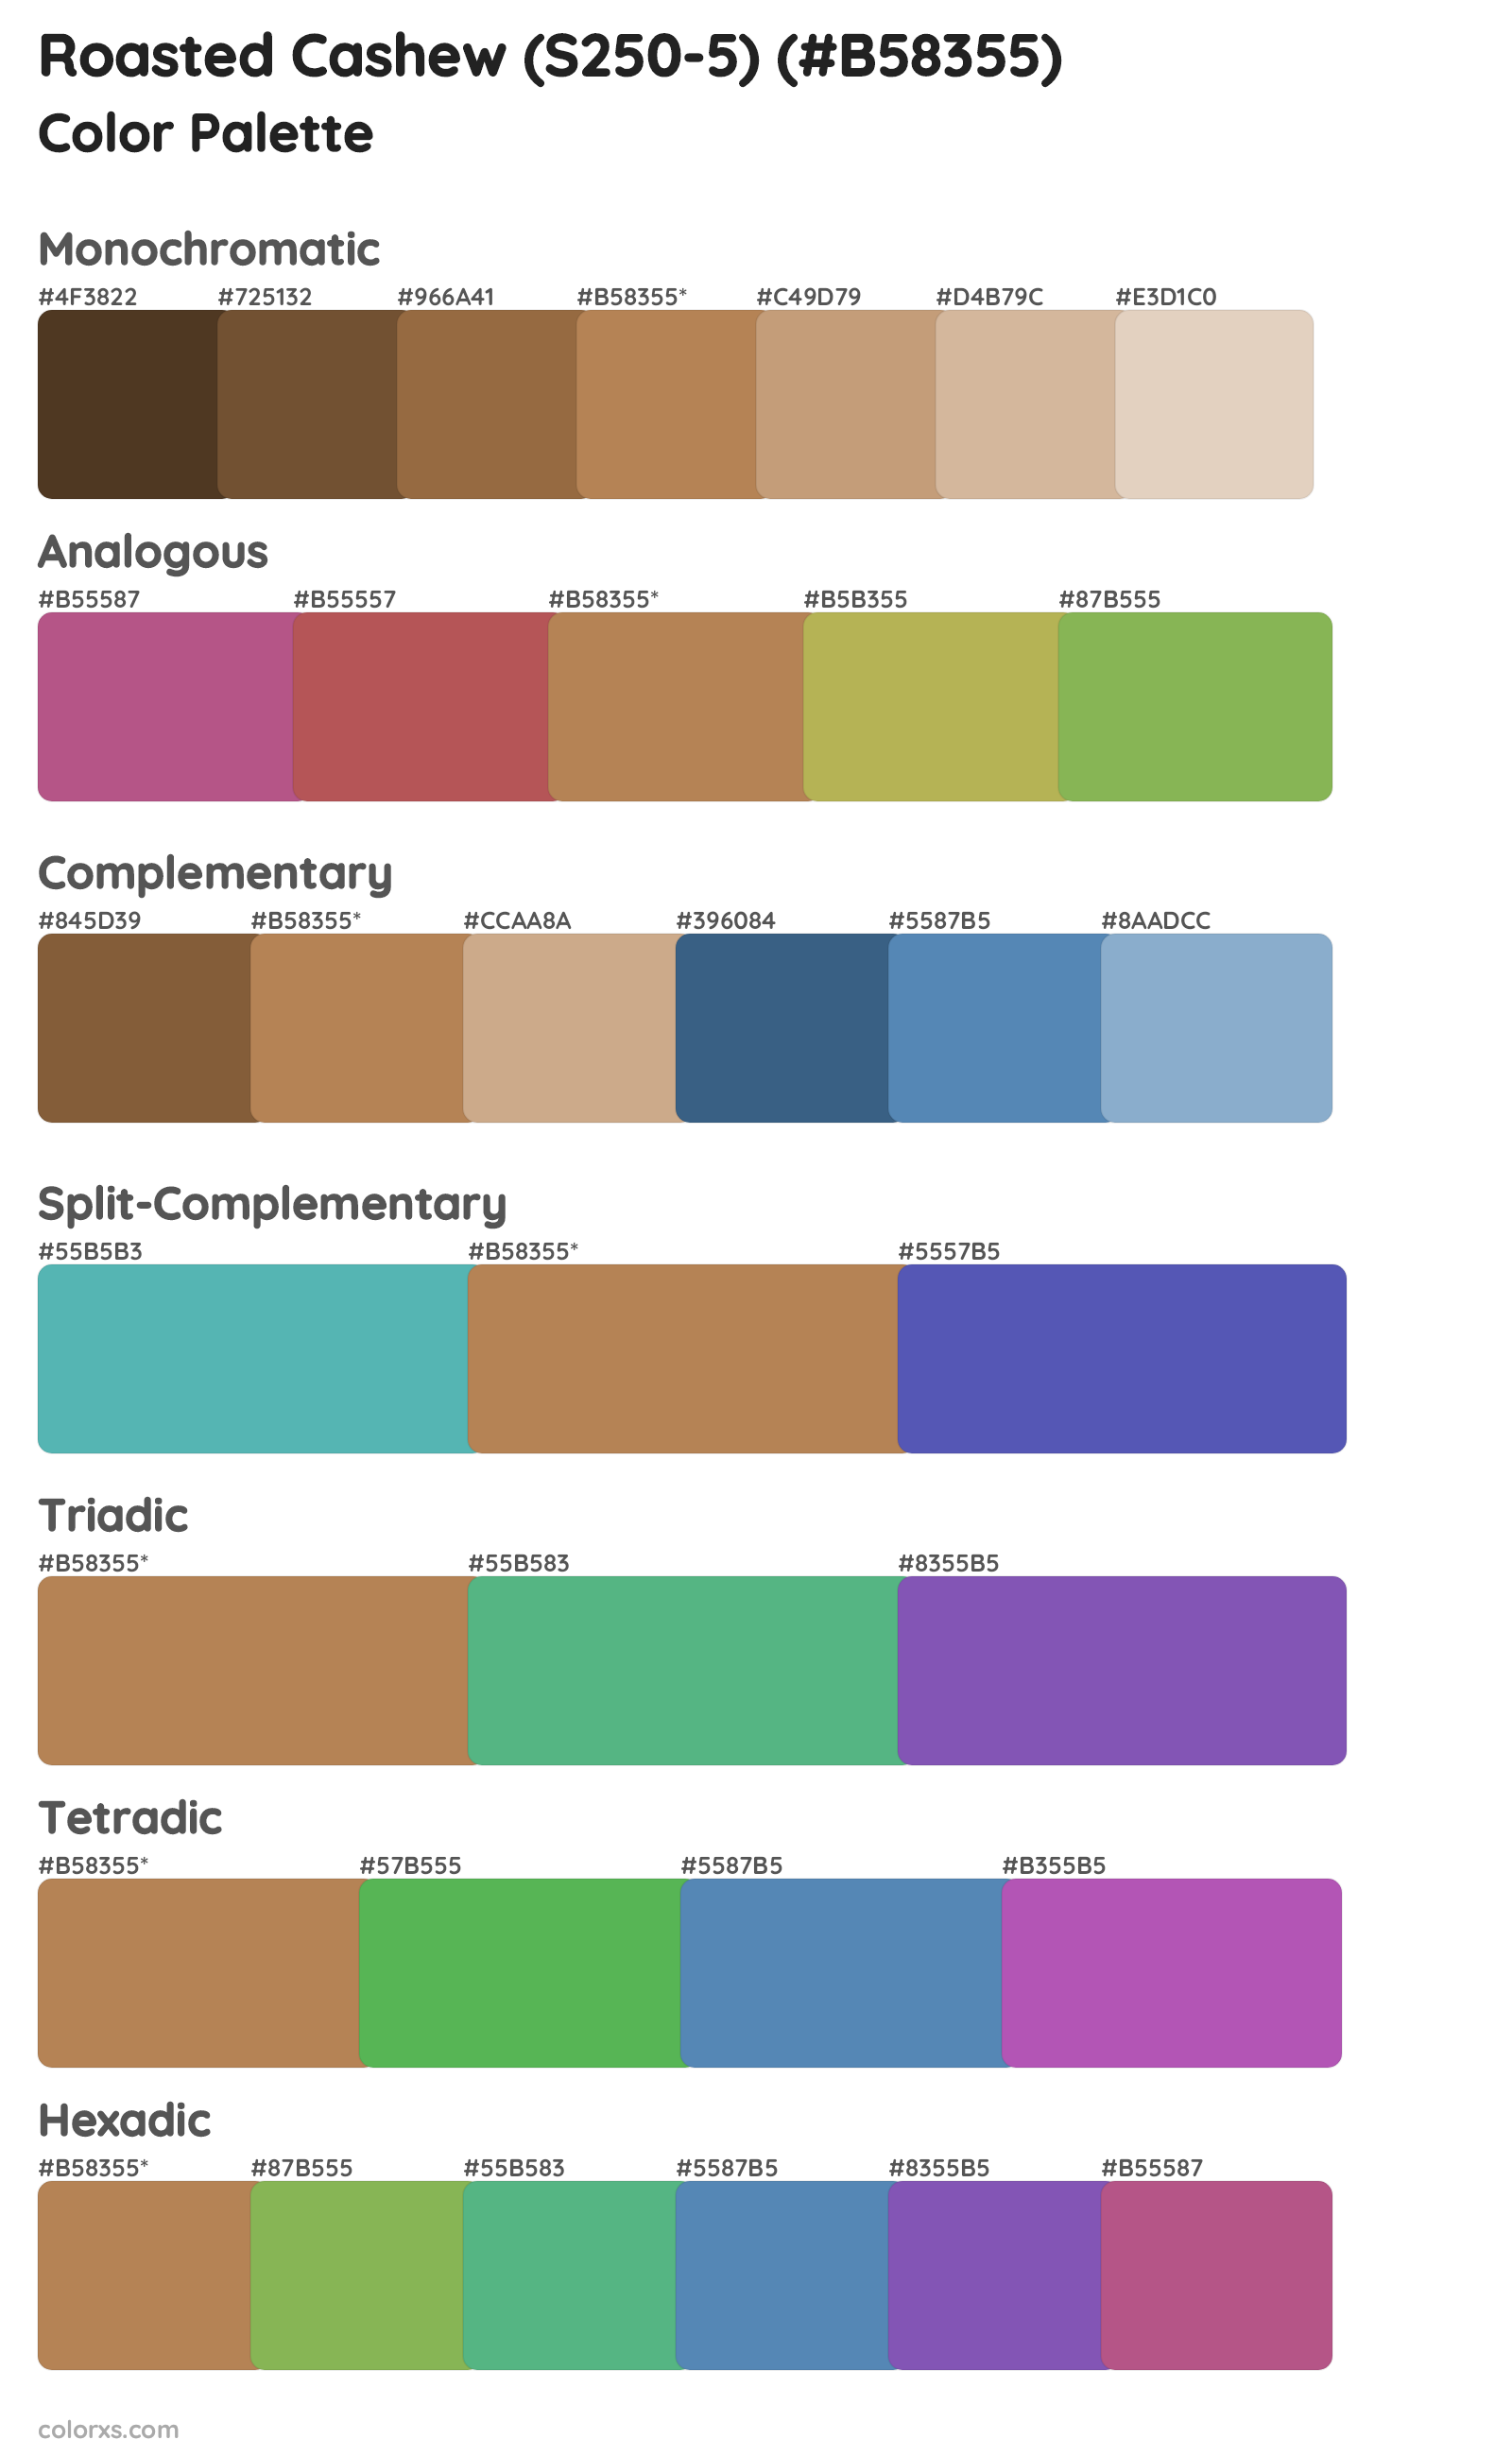 Roasted Cashew (S250-5) Color Scheme Palettes